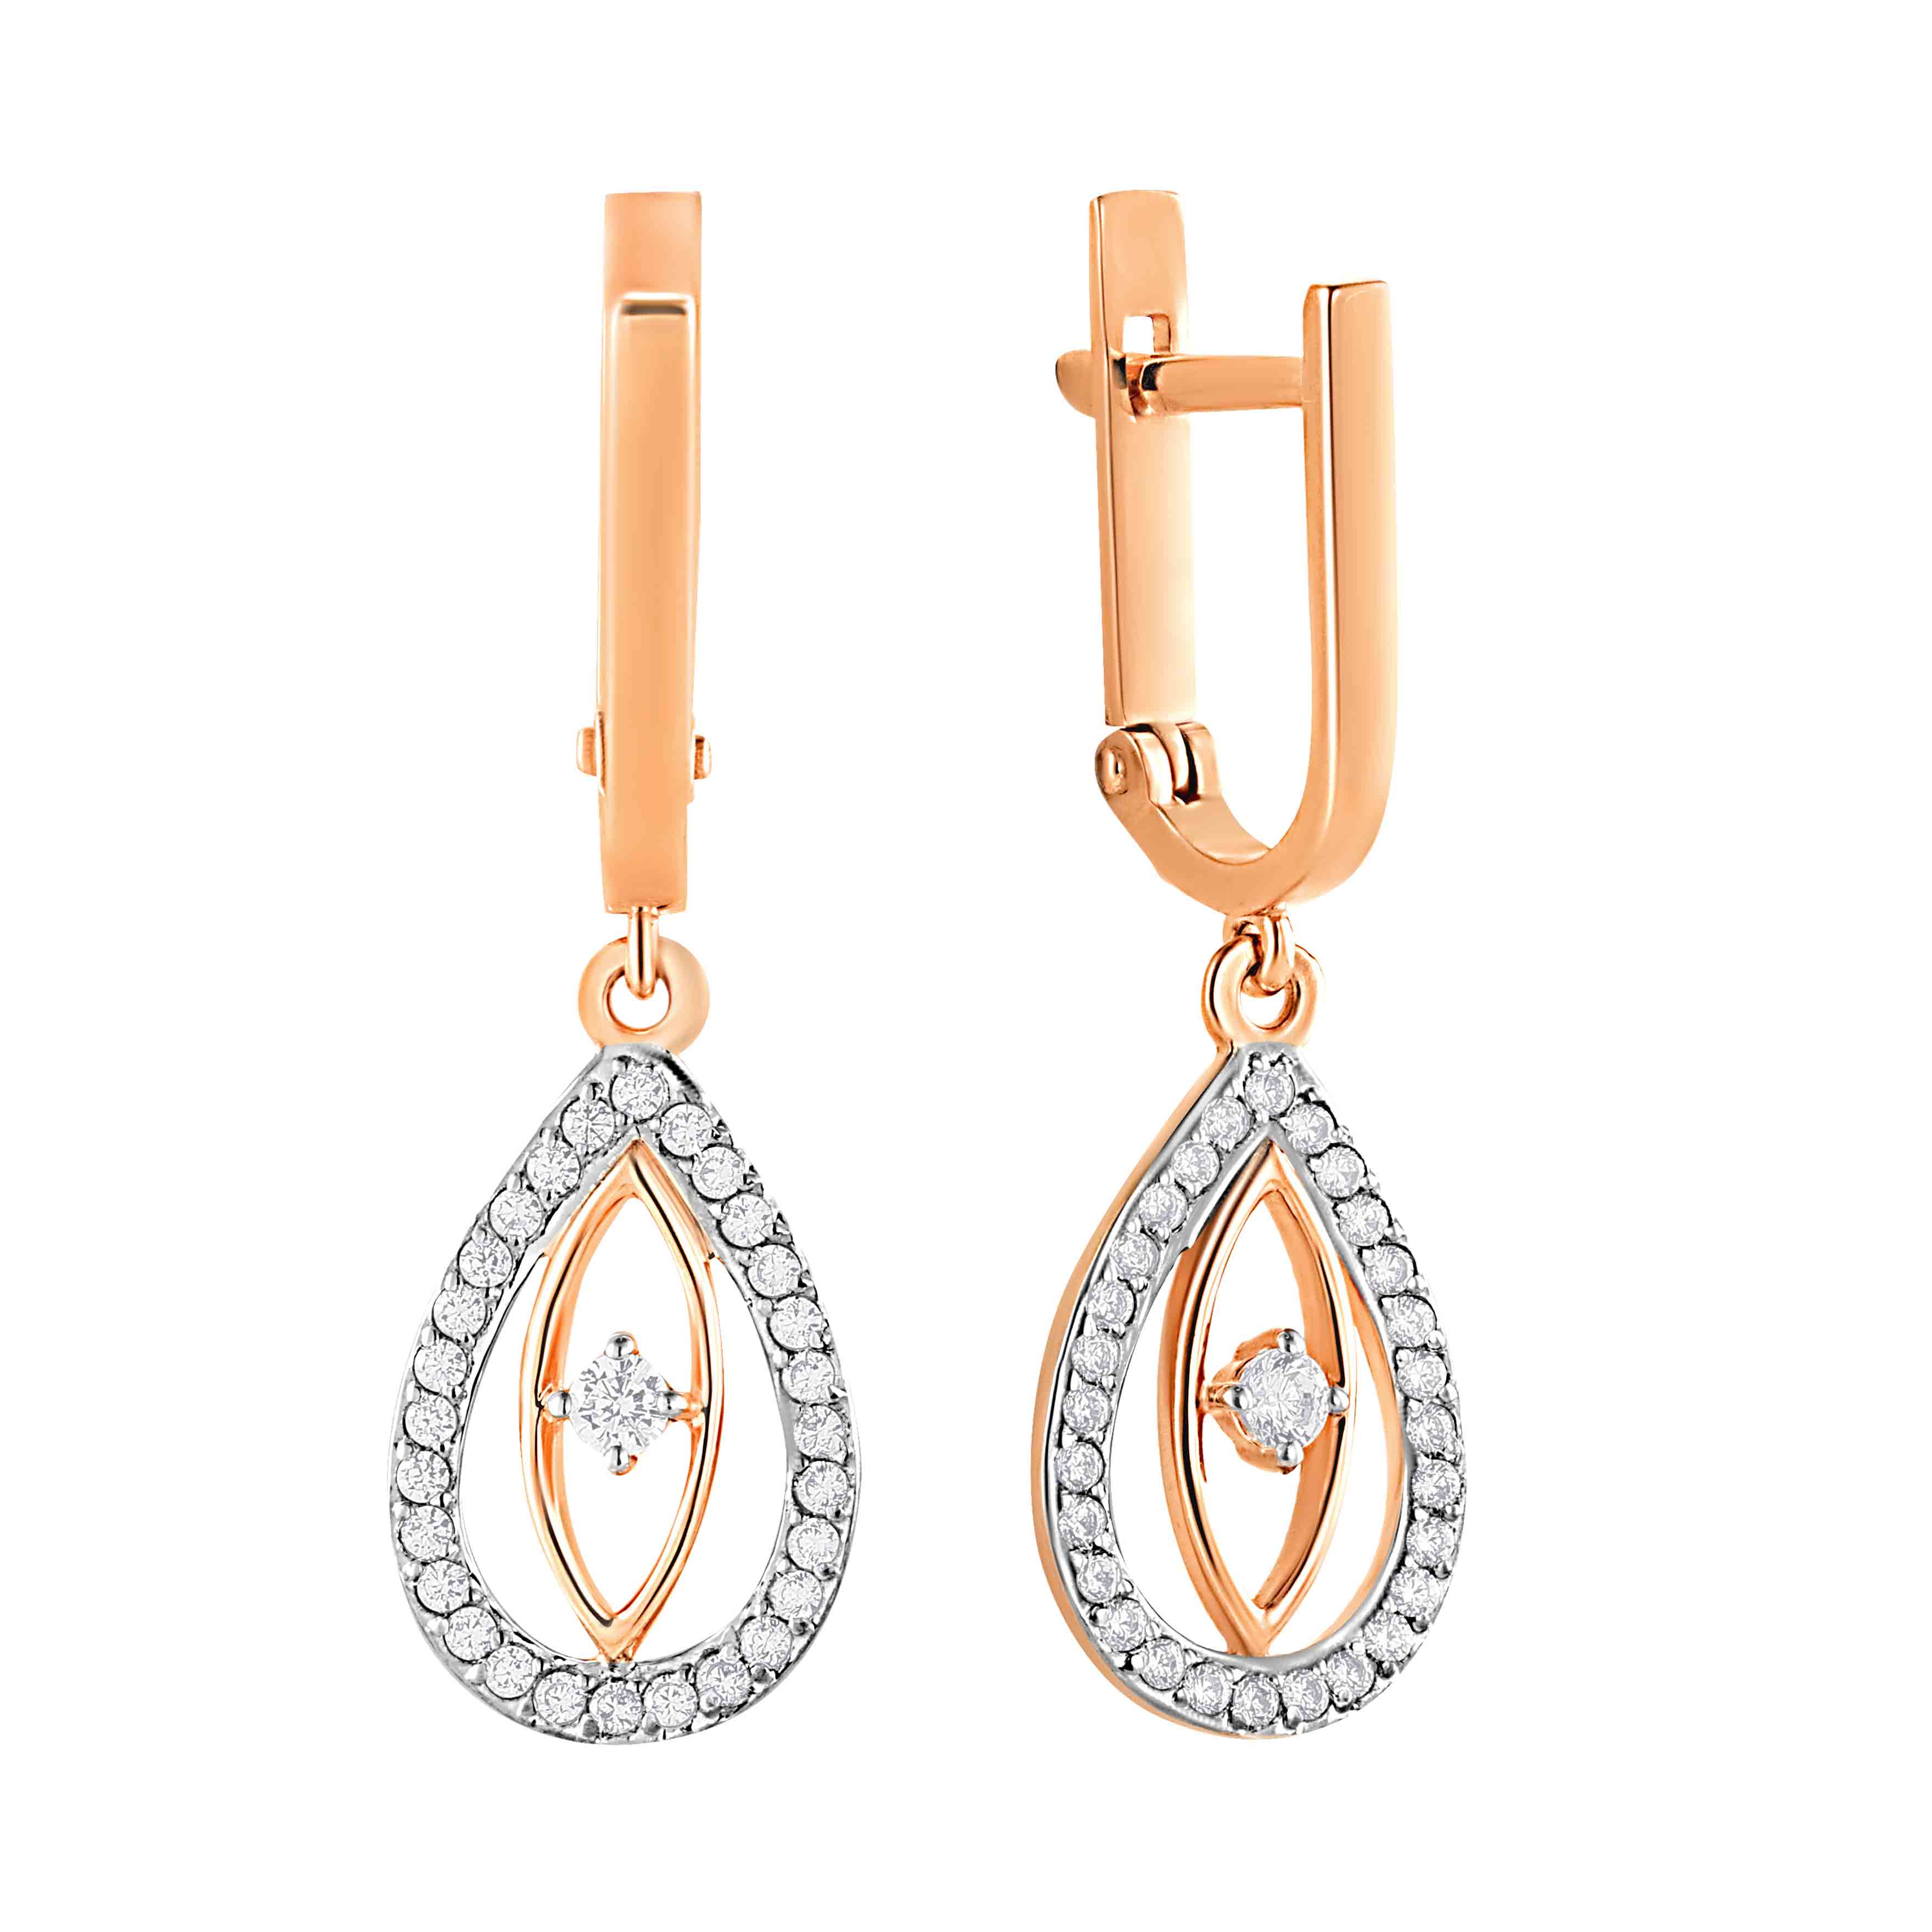 Earrings - Diamond, Pearl, Gold Earrings | Best Buy Canada